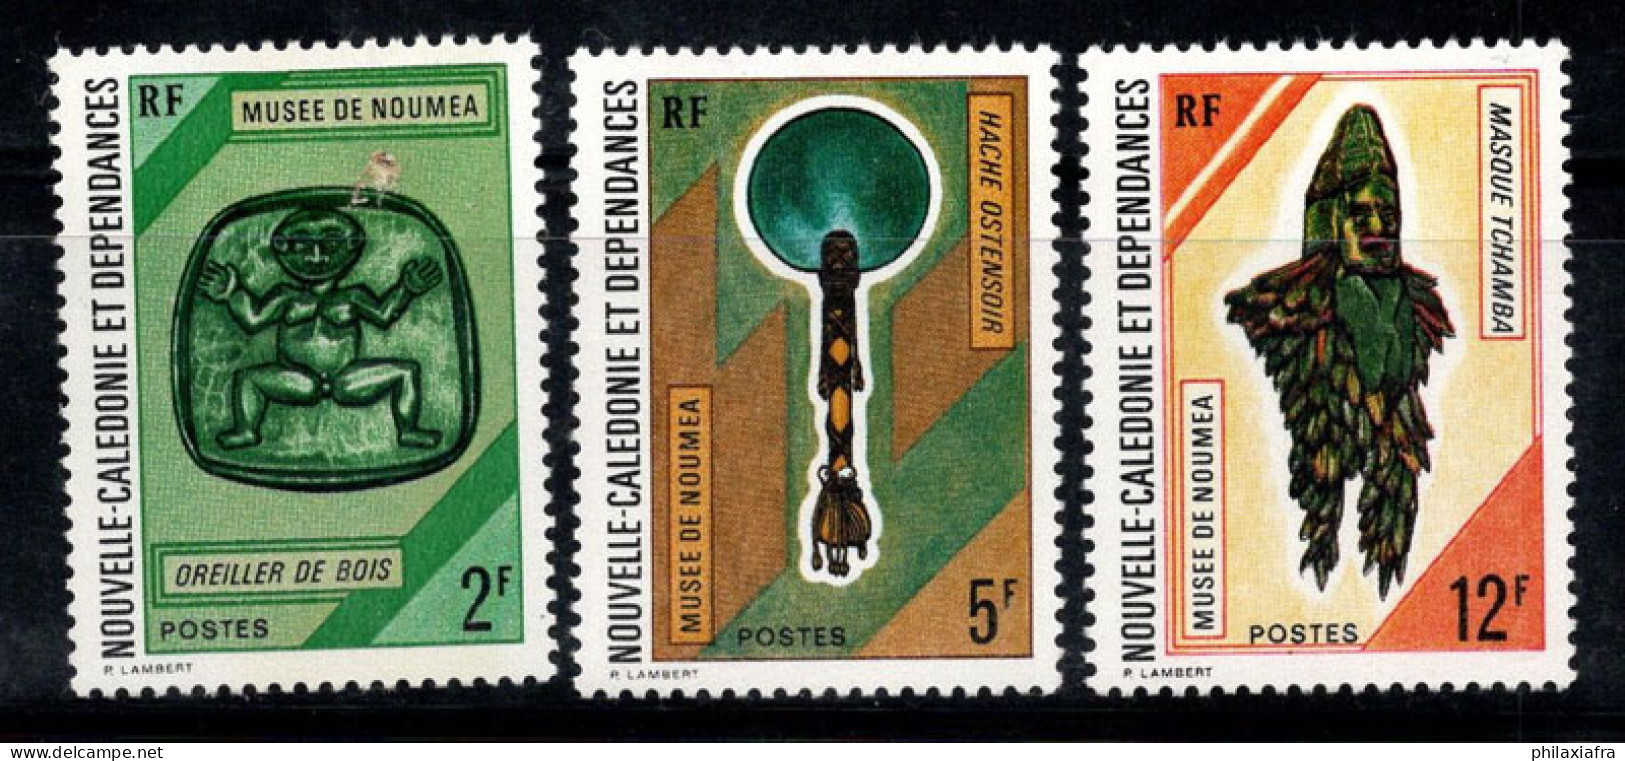 Nouvelle-Calédonie 1972 Mi. 520-522 Neuf ** 100% Musée, Art - Neufs